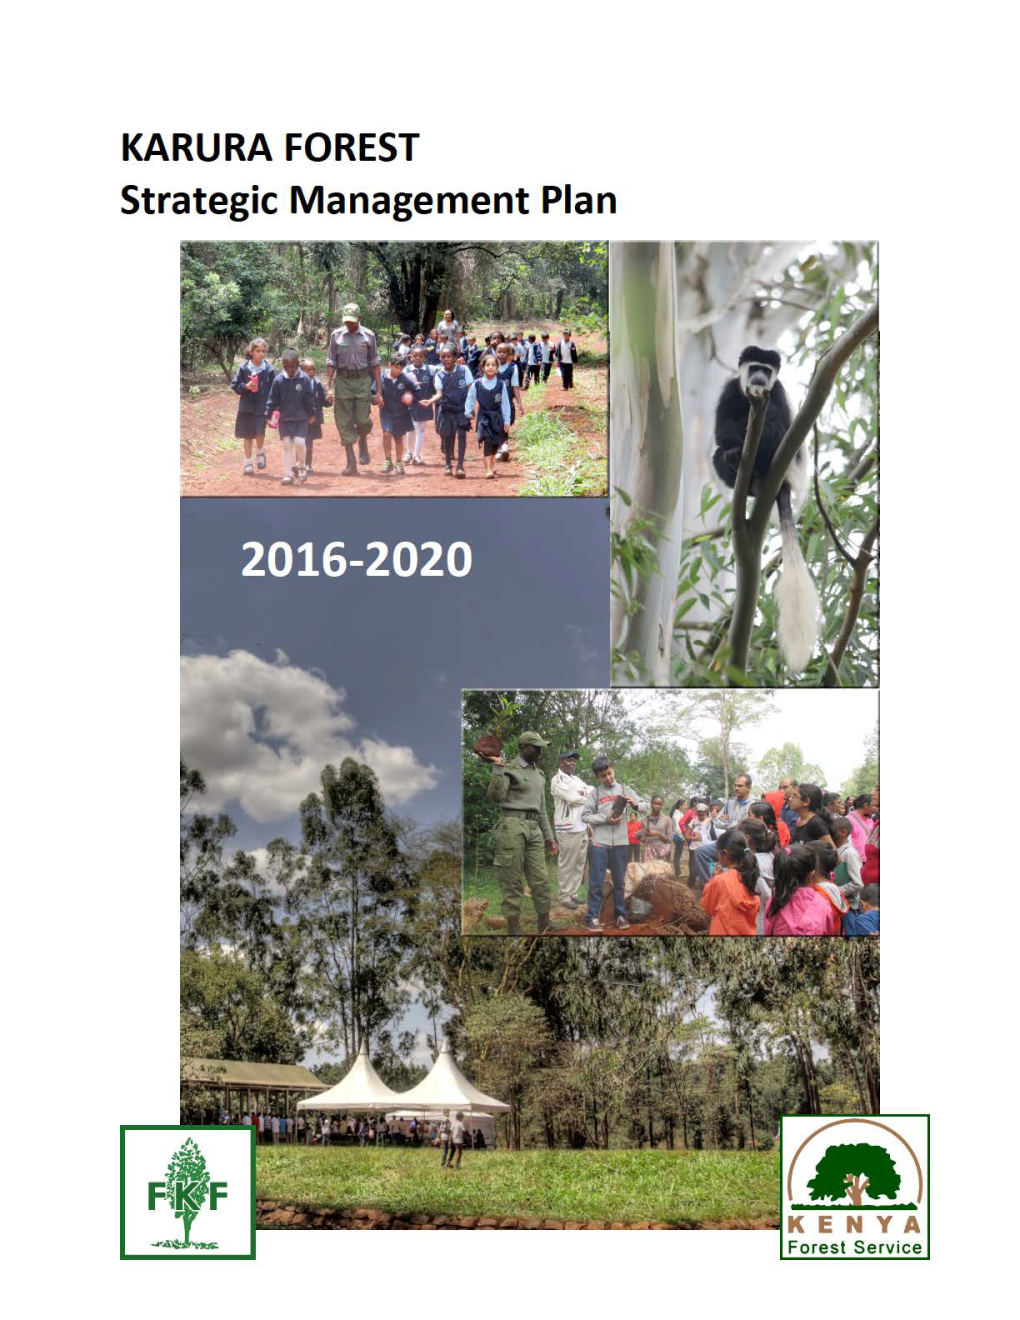 Karura Forest Strategic Management Plan (2016-2020)